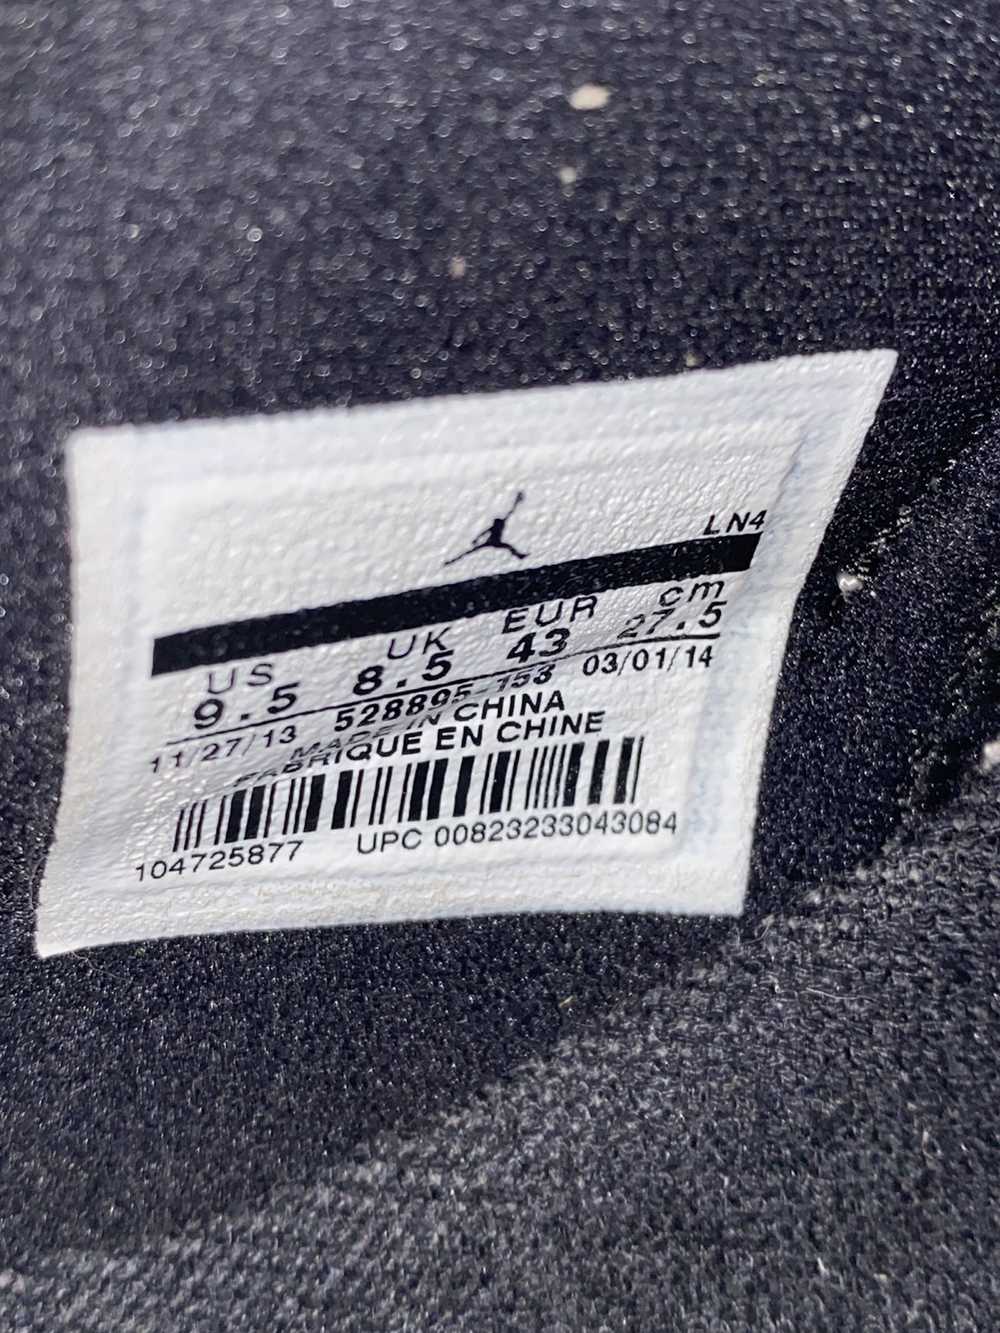 Jordan Brand × Nike Jordan 11 Concord low (2014) - image 6